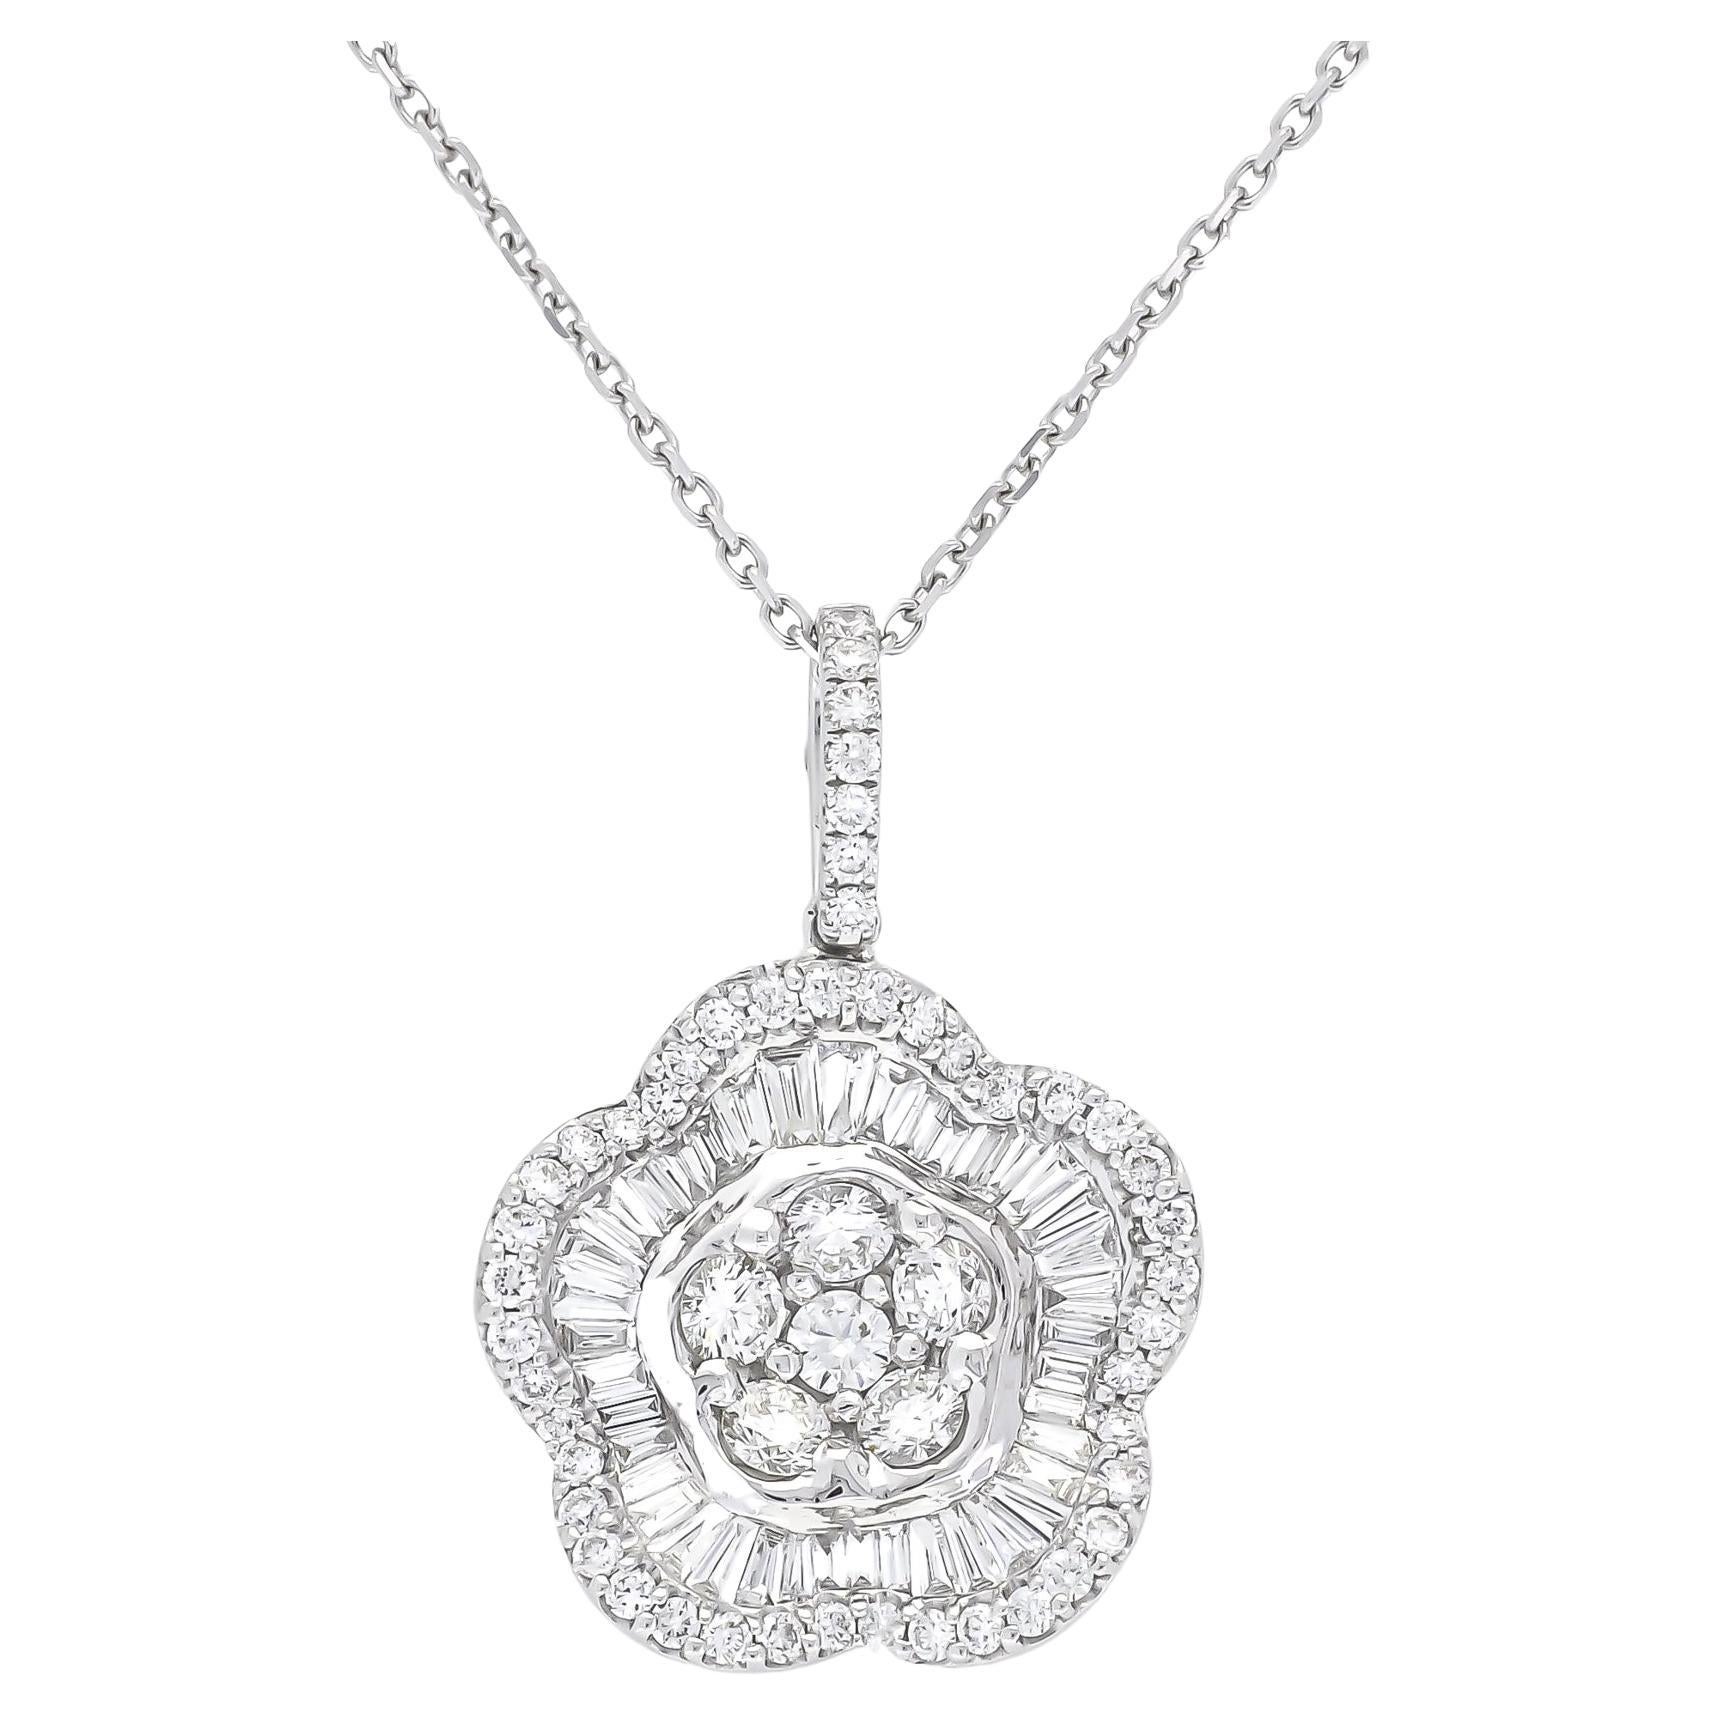 18KT Weißgold Natürliche Diamanten Moderne Blume Halo Anhänger Halskette